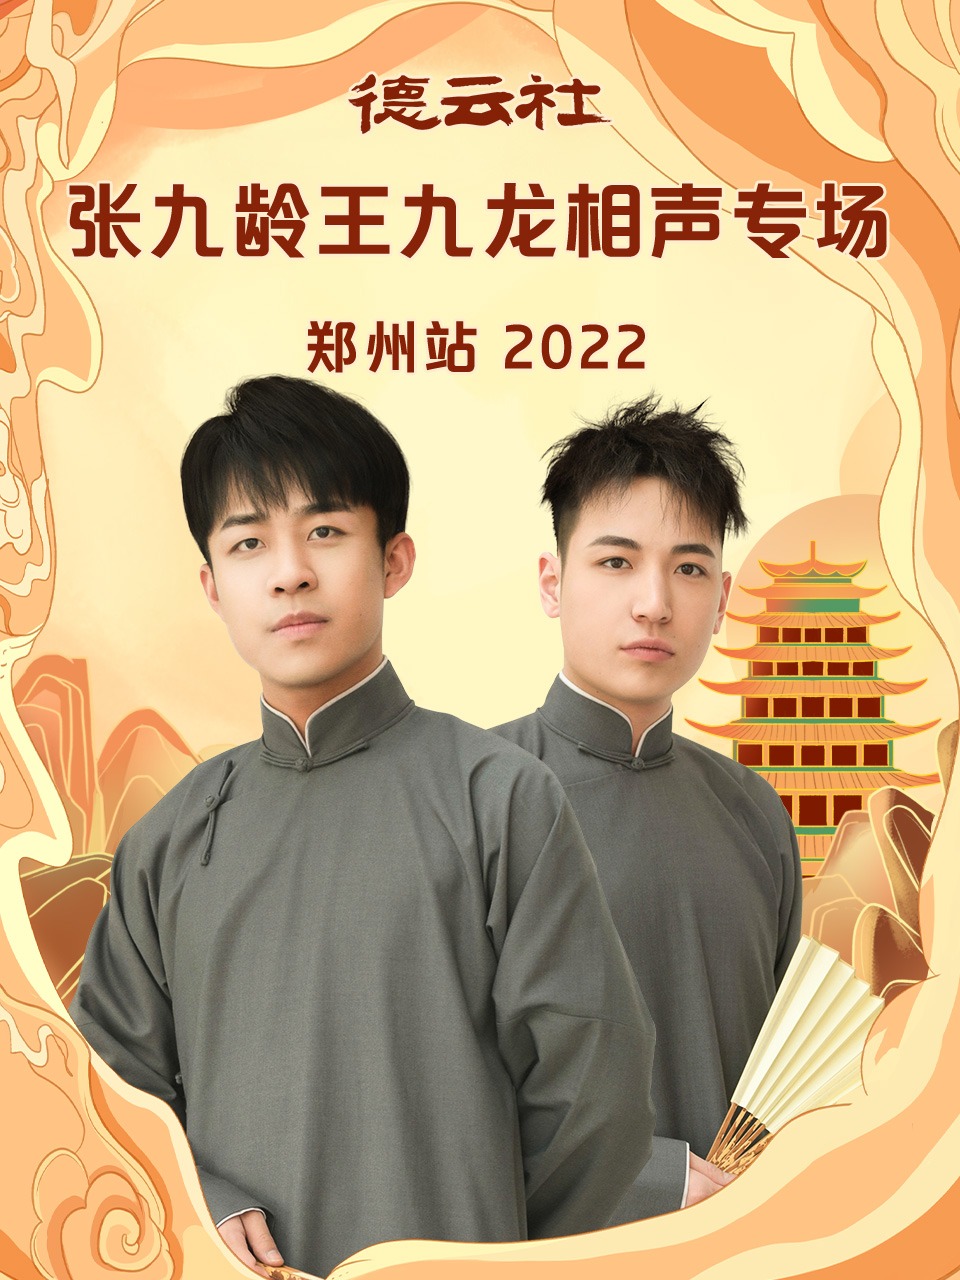 德云社张九龄王九龙相声专场郑州站 2023